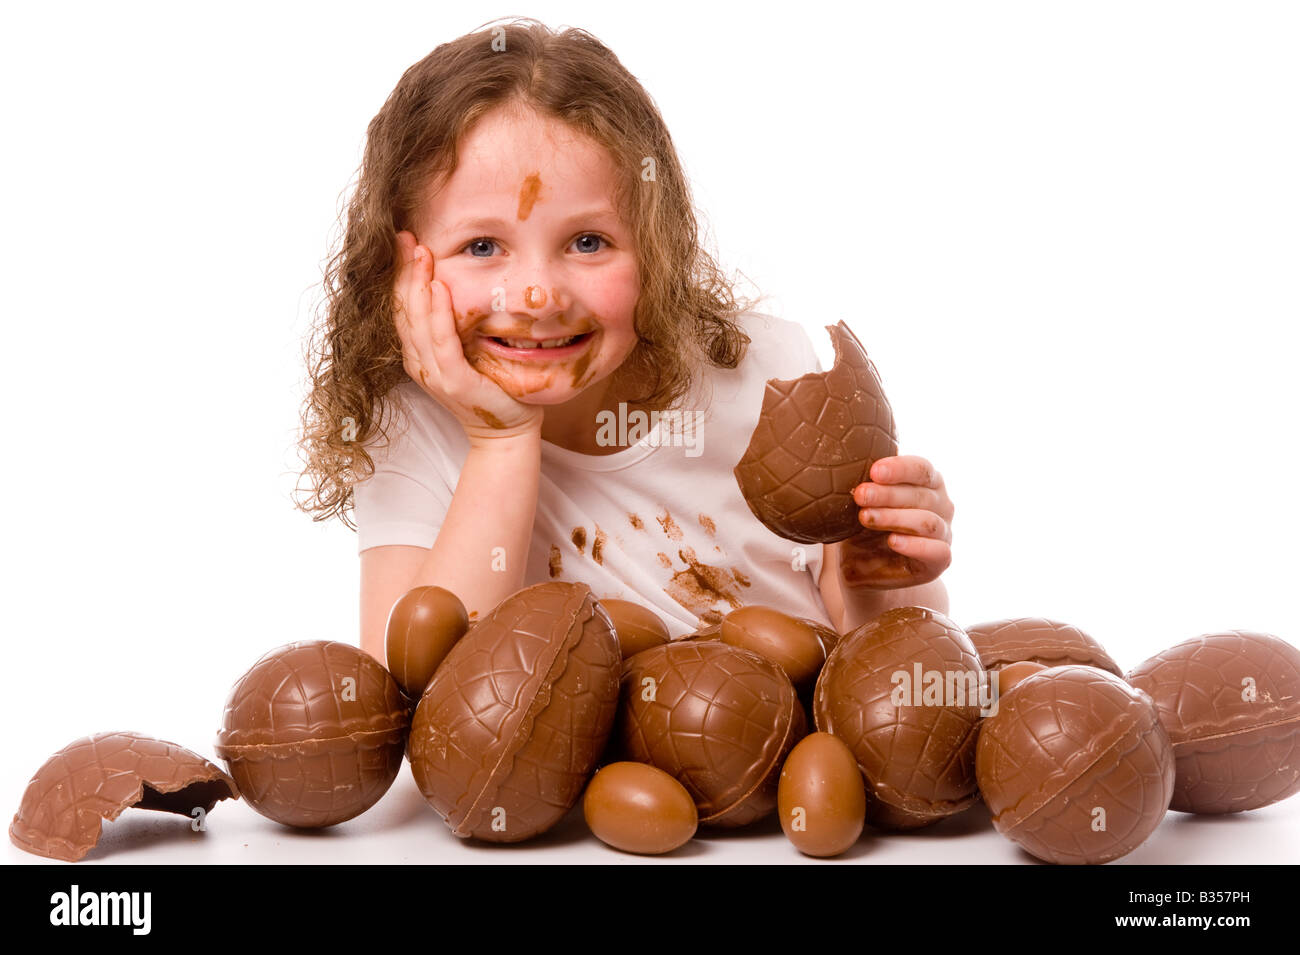 Jeune enfant souriant avec du chocolat sur son visage et t-shirt blanc avec beaucoup d'oeufs de Pâques au premier plan, vu sur un fond blanc. Banque D'Images